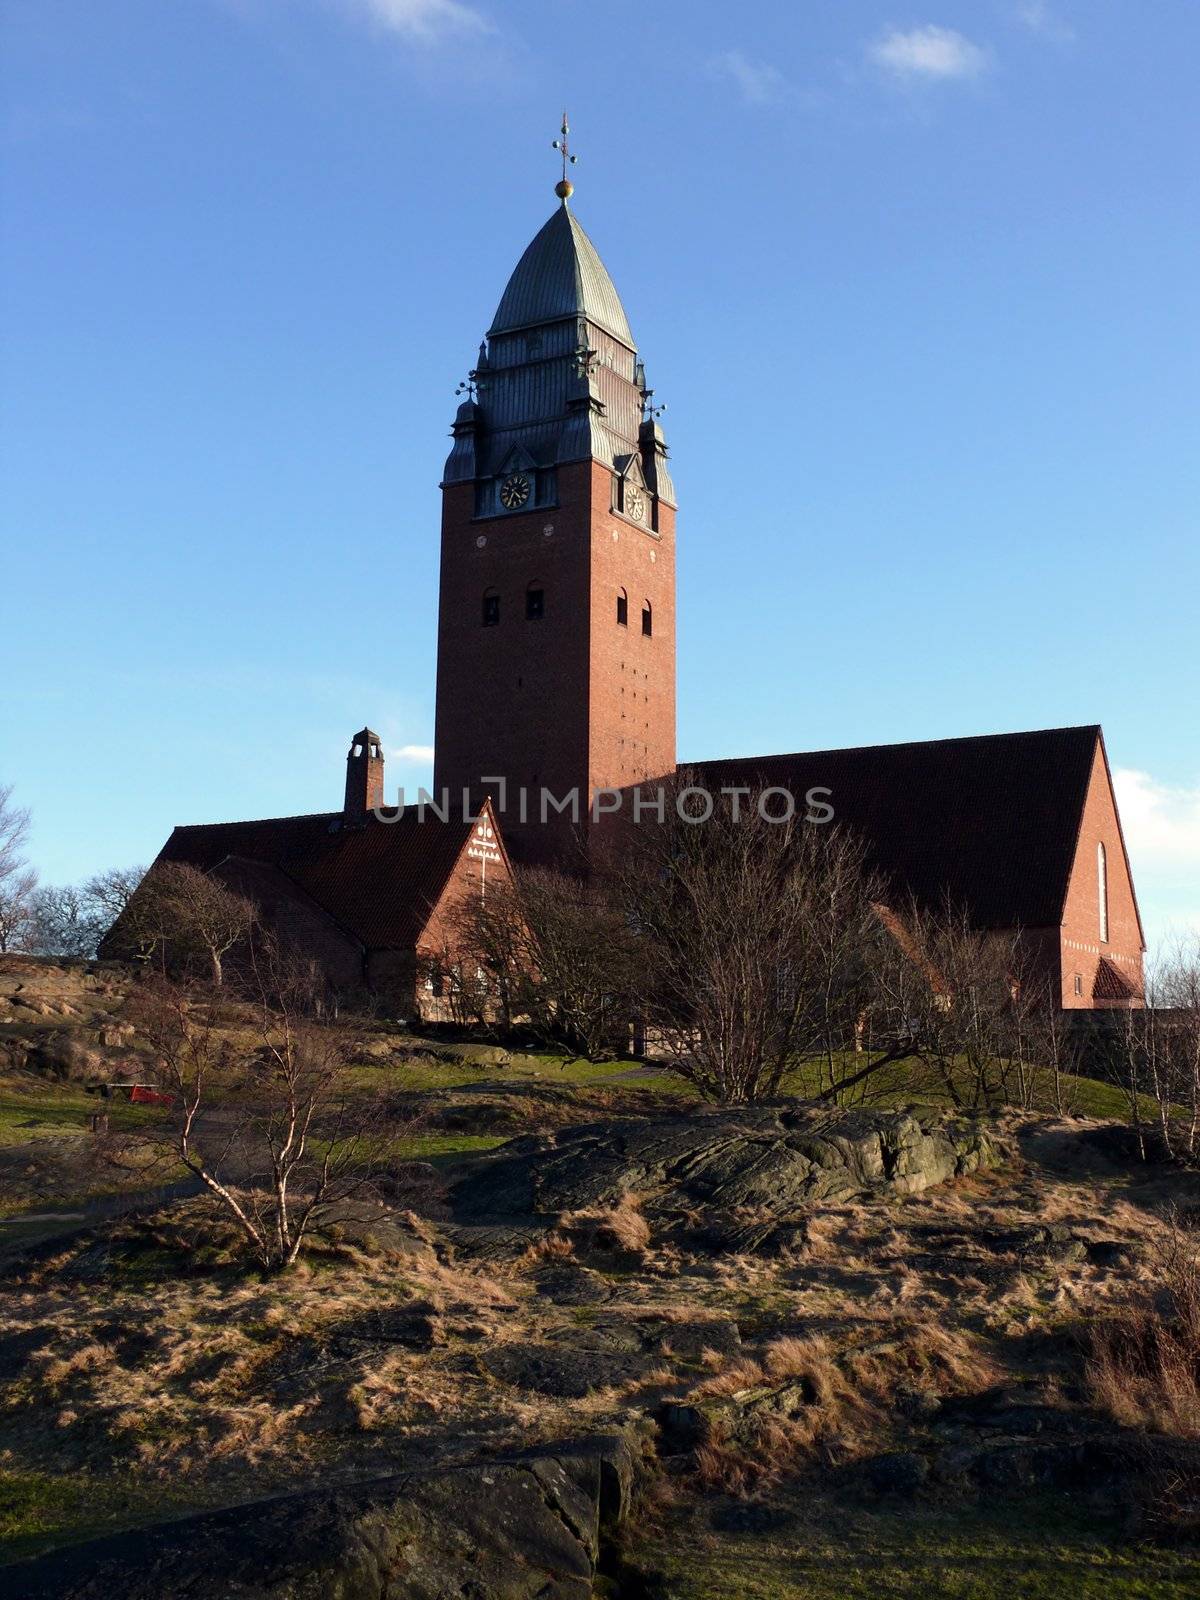 portrait of Masthugg church from 1914 in Gothenburg Sweden